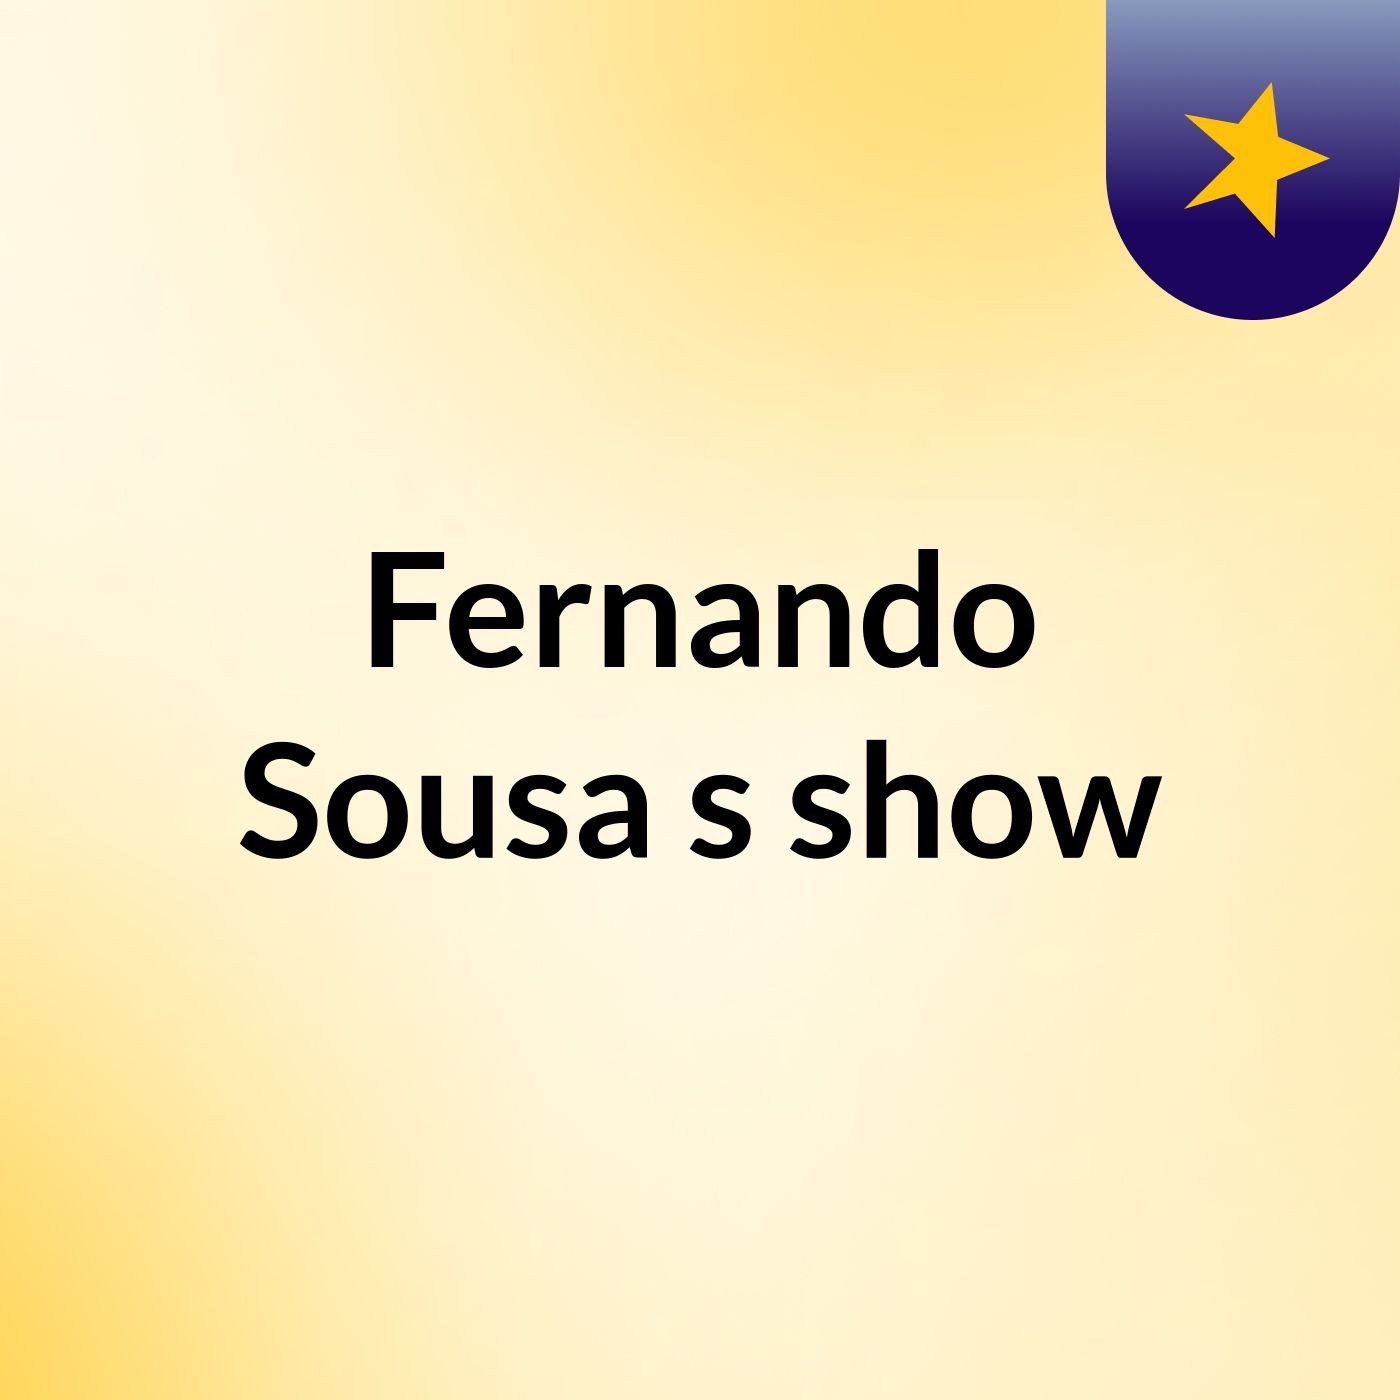 Fernando Sousa's show